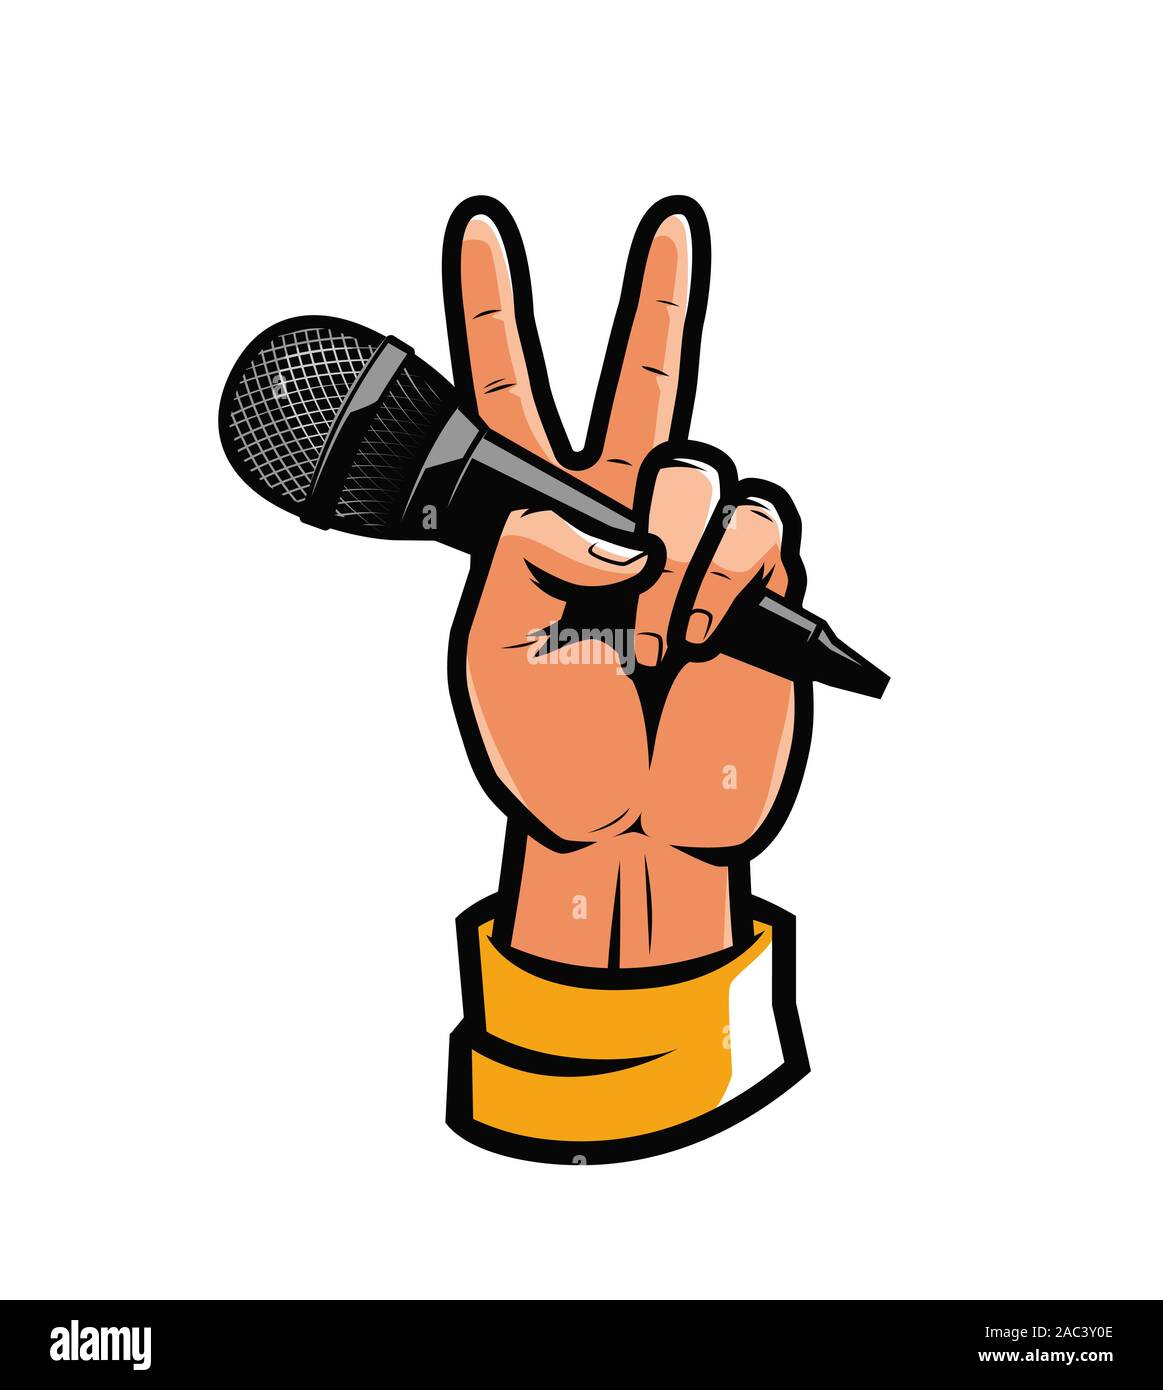 Mikrofon in der Hand. Pop Art im Retro-Comic-Stil. Vektorgrafik Reportage Stock Vektor